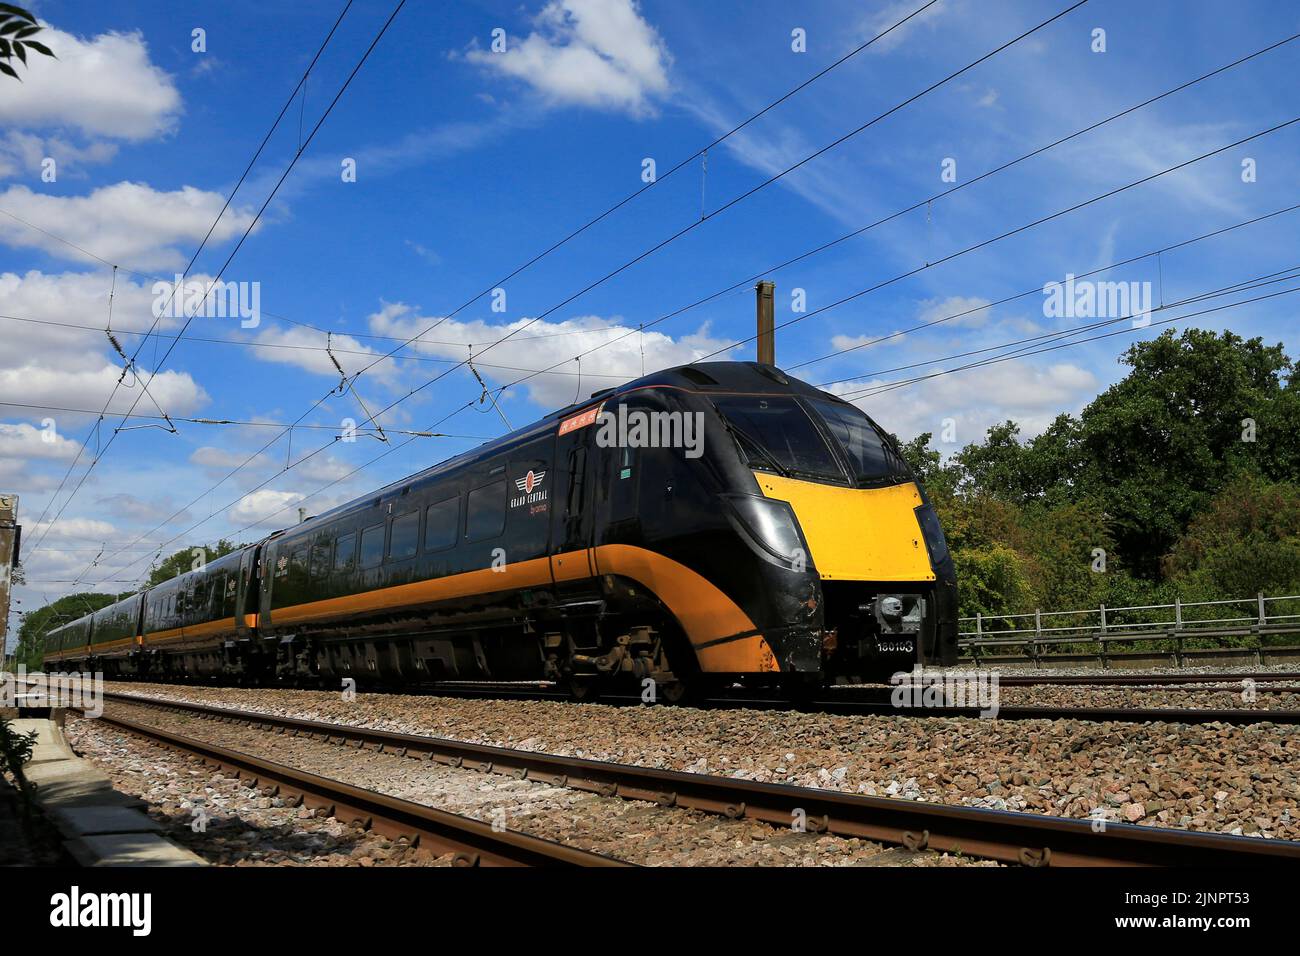 180 clase Zephyr, Grand Central de trenes, el ferrocarril de la línea principal de la costa oriental, Peterborough, Cambridgeshire, Inglaterra, Reino Unido. Foto de stock